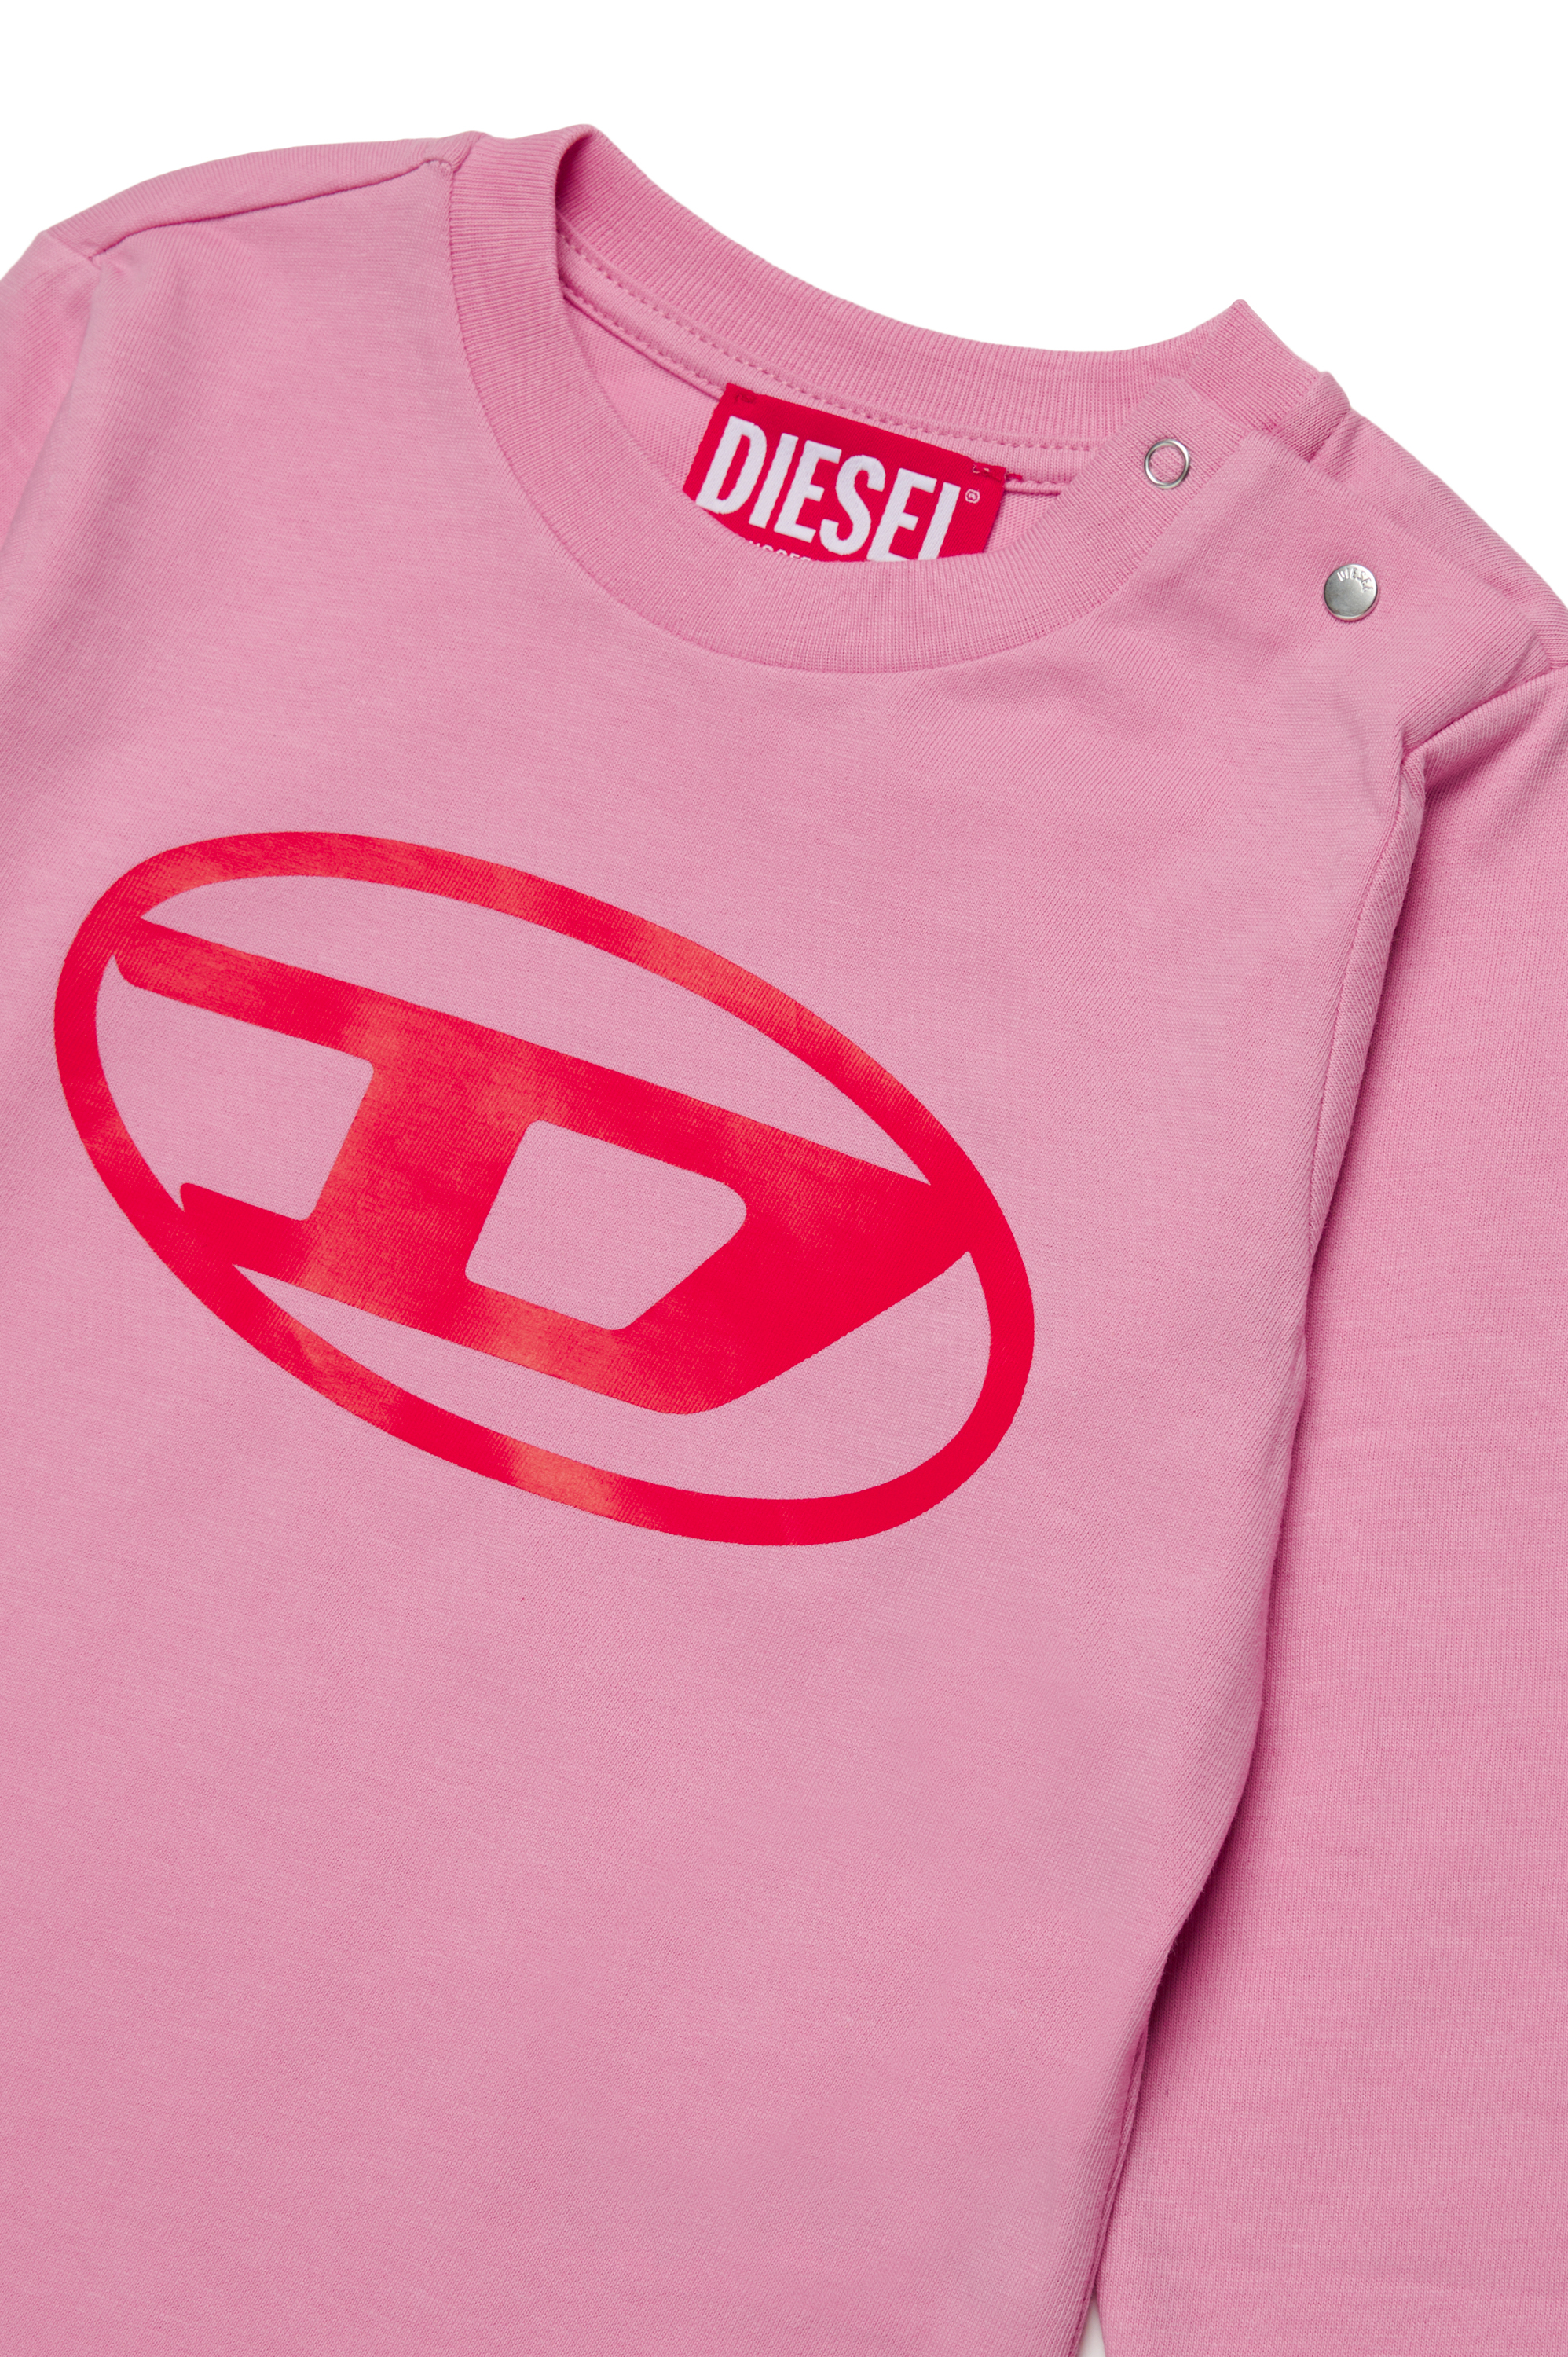 Diesel - TCERBLSB, Unisex Camiseta de manga larga con Oval D in Rosa - Image 3